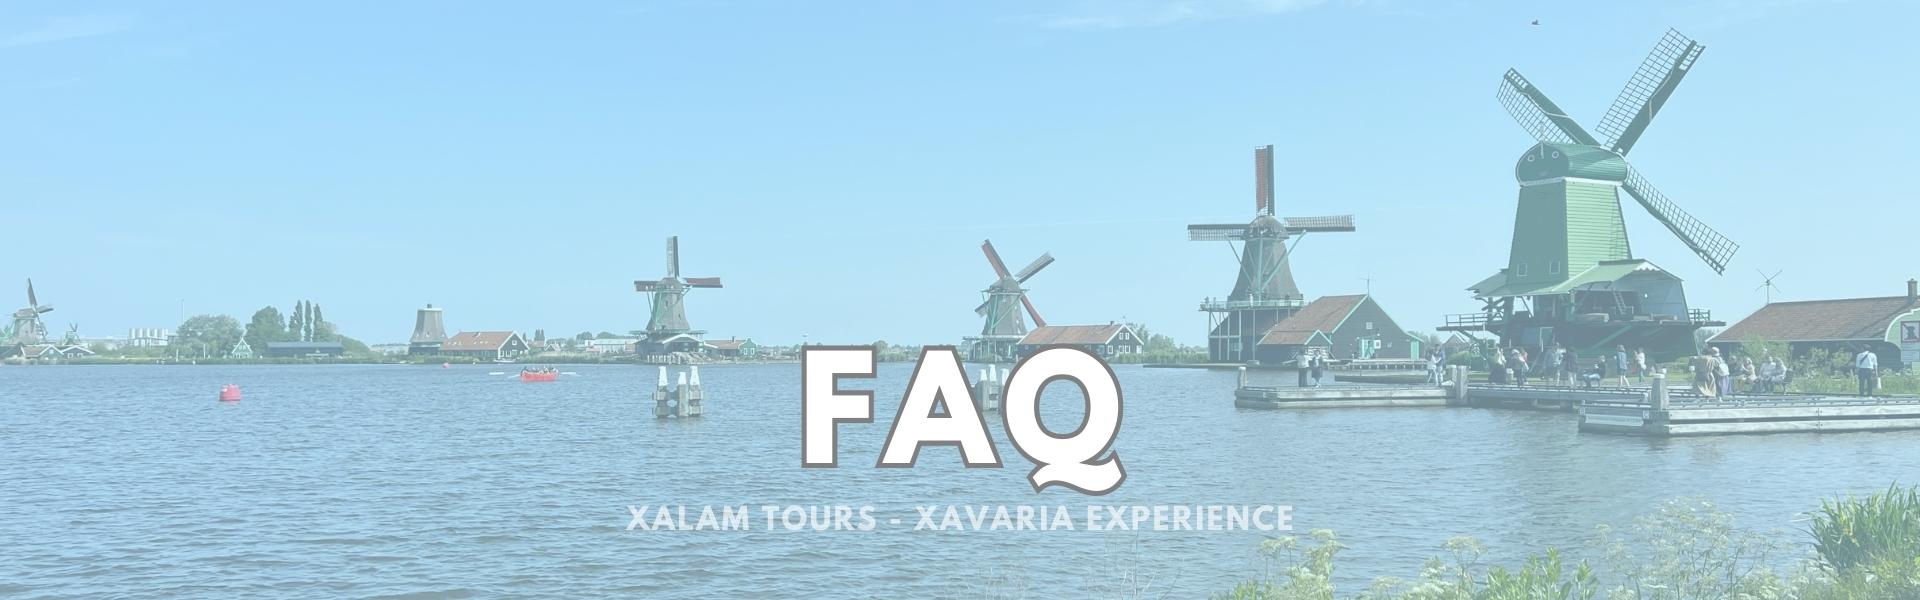 Faq - Esperienza Olanda - Xalam Tours